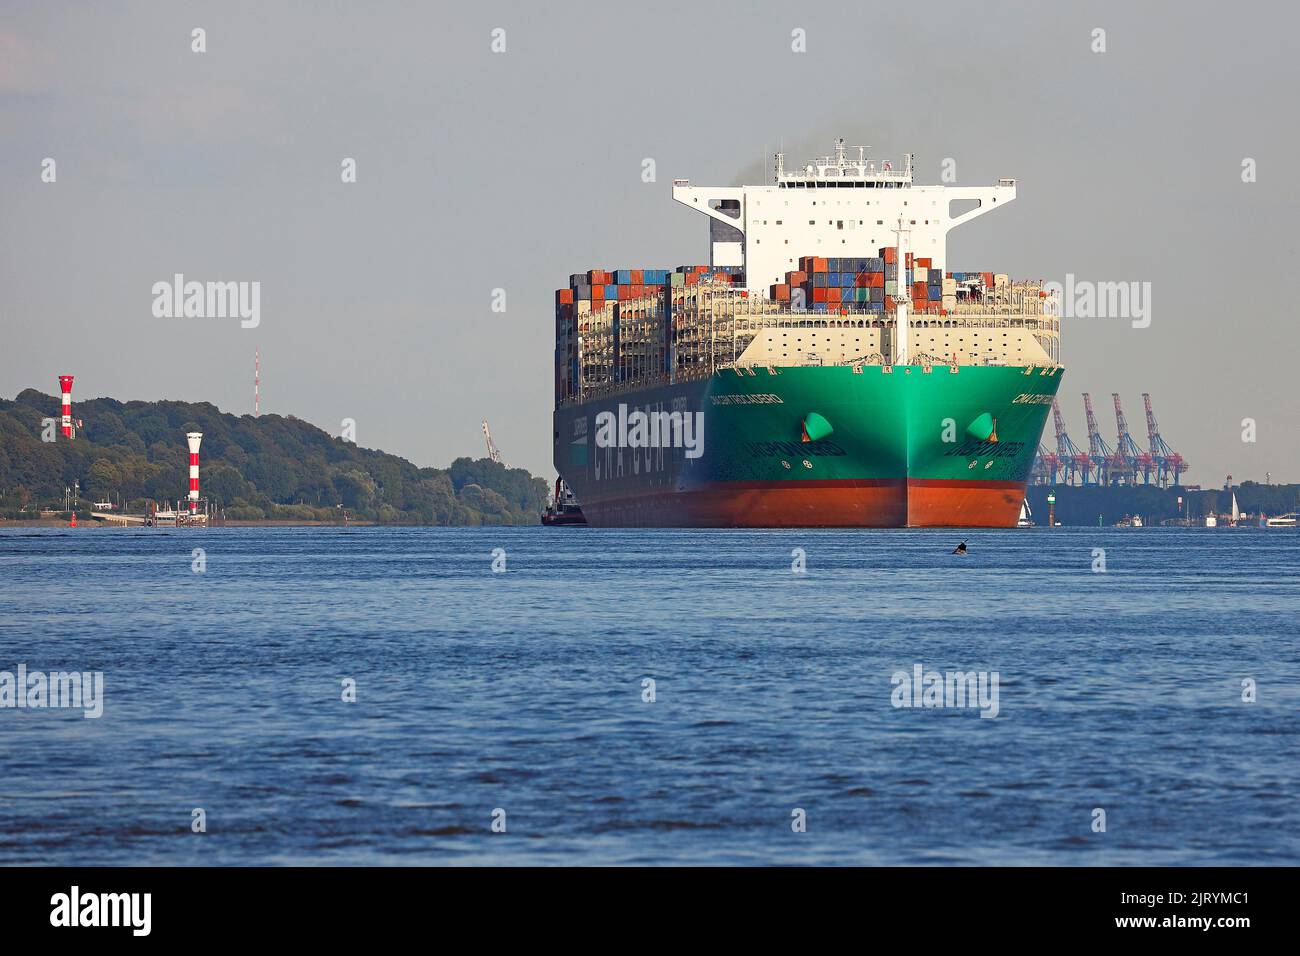 La nave container CMA CGM TROCADERO alimentata da GNL di gas naturale liquefatto lascia il porto di Amburgo sul fiume Elba, Amburgo, Germania Foto Stock